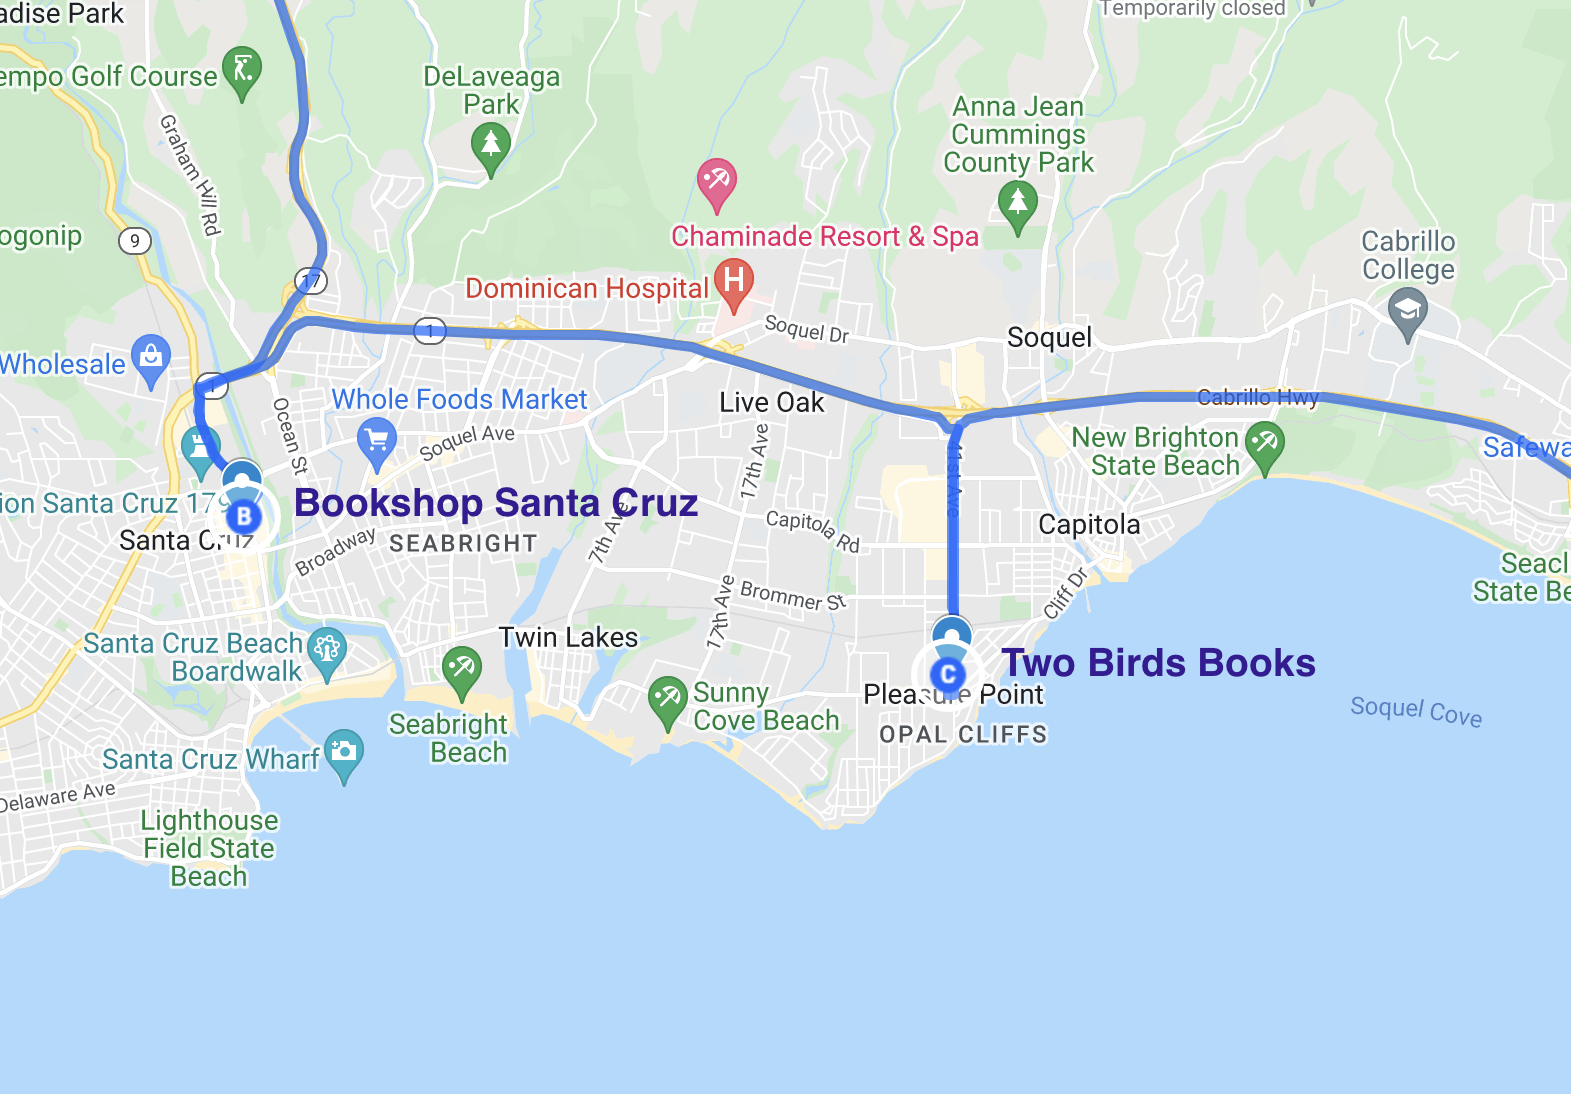 map of literary stops in santa cruz california